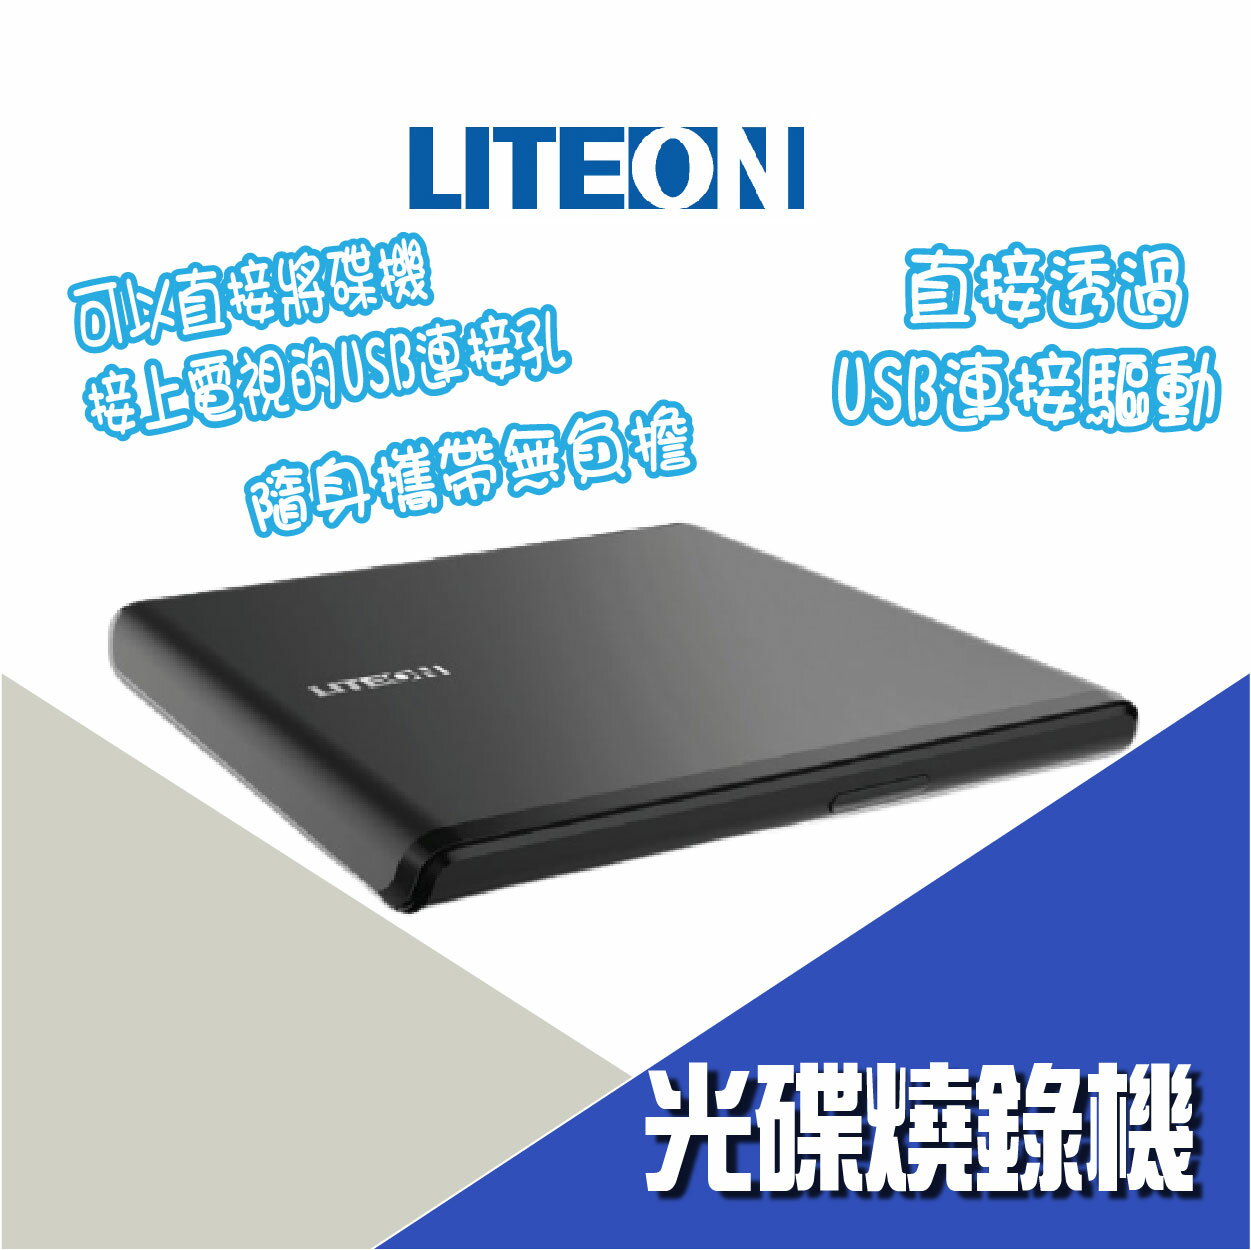 Externo Liteon ES1 Lector-Grabador Externo DVD, UltraSlim